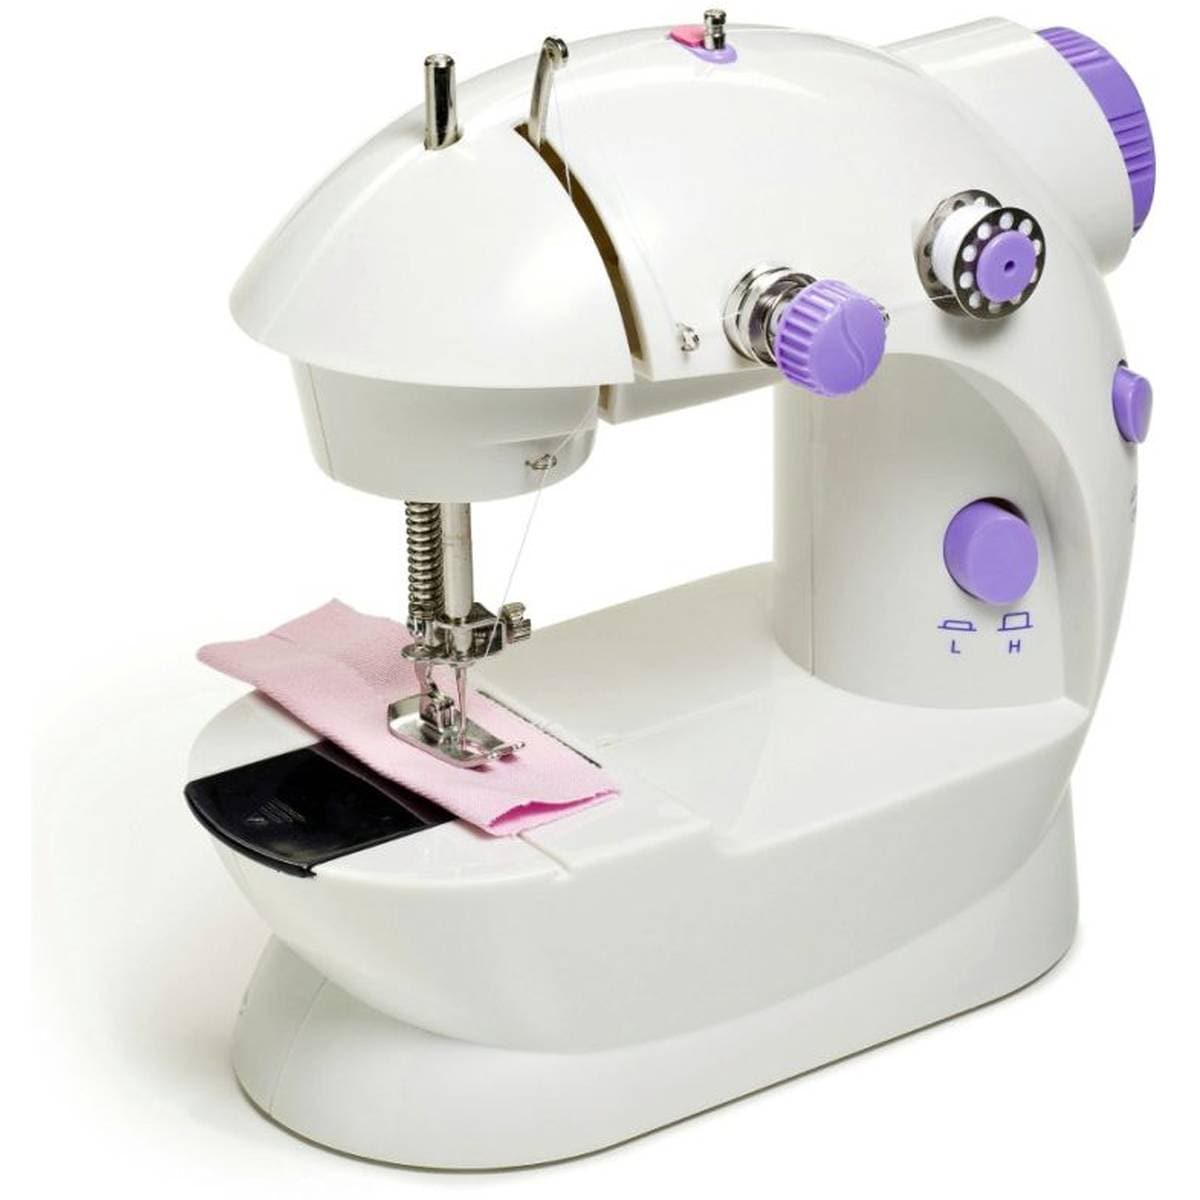 Made By Me My Very Own Máquina de coser para principiantes, máquina de  coser portátil con pilas para niños a partir de 8 años, incluye tela, hilo